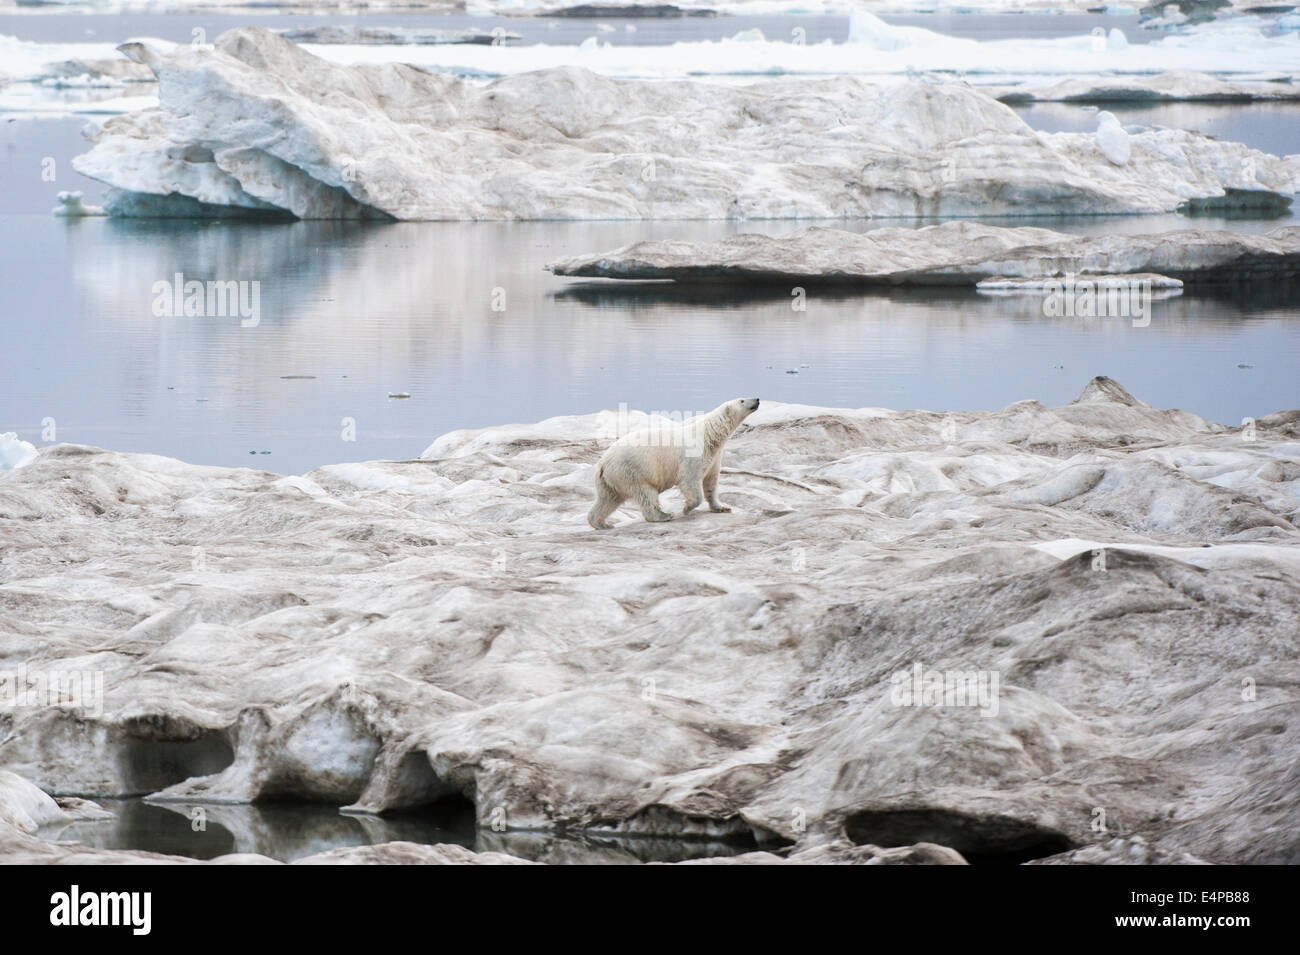 L'ours polaire sur la glace flottante (Ursus maritimus), Cape Waring, l'île Wrangel, Chuckchi Mer, Tchoukotka, Extrême-Orient russe Banque D'Images